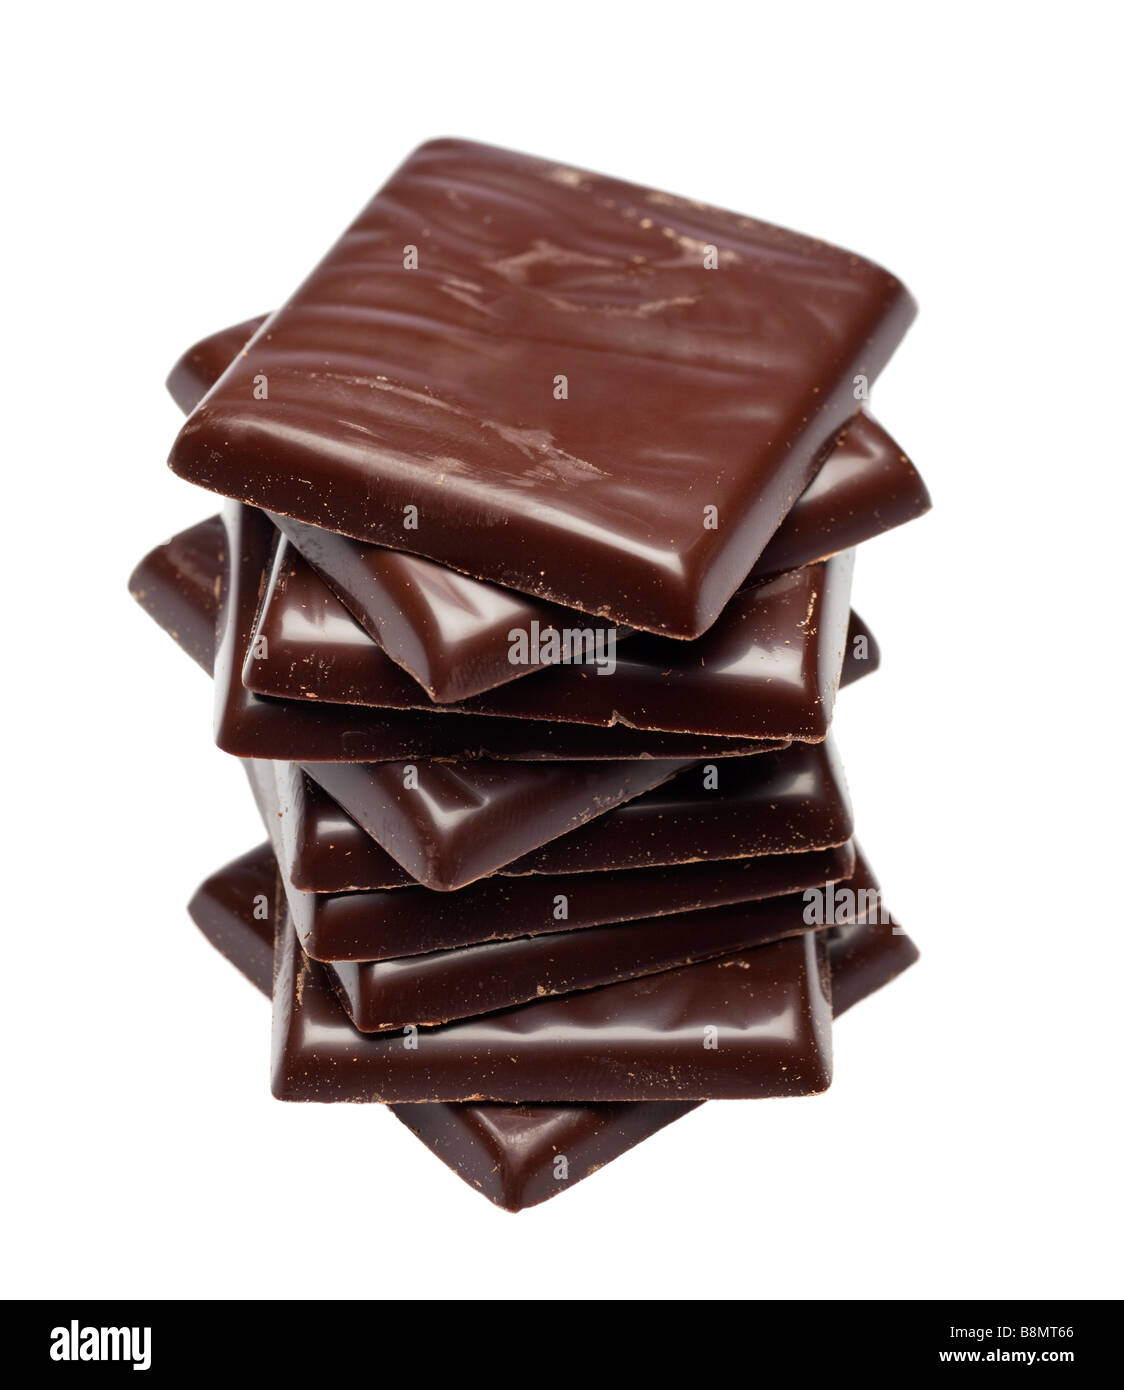 Stapel von dunkler Schokolade nach acht Dinner mints Ausschnitt Stockfoto